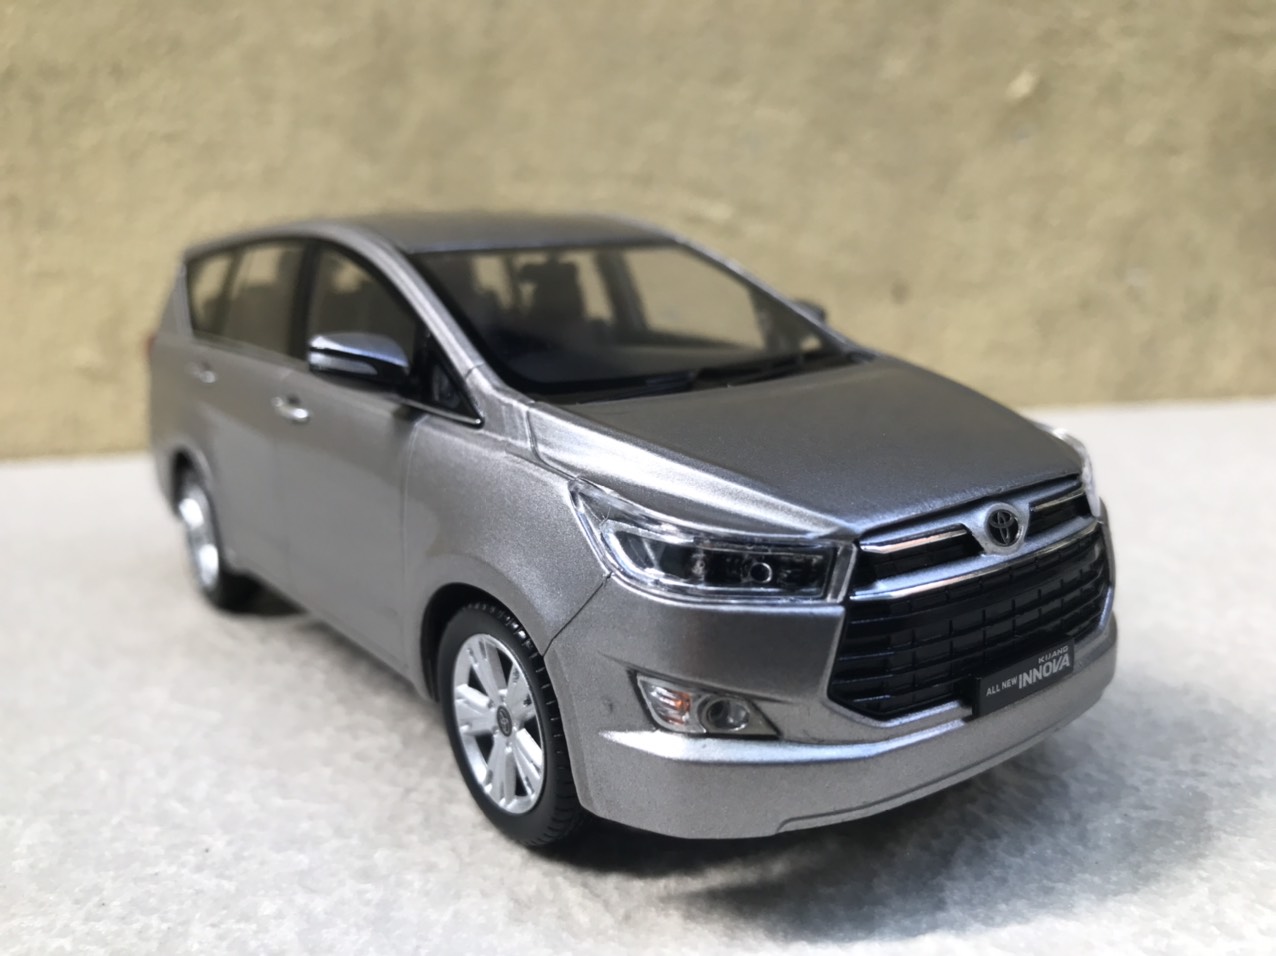 Bảng giá xe Toyota 2023  các sản phẩm bán chính hãng tại Việt Nam